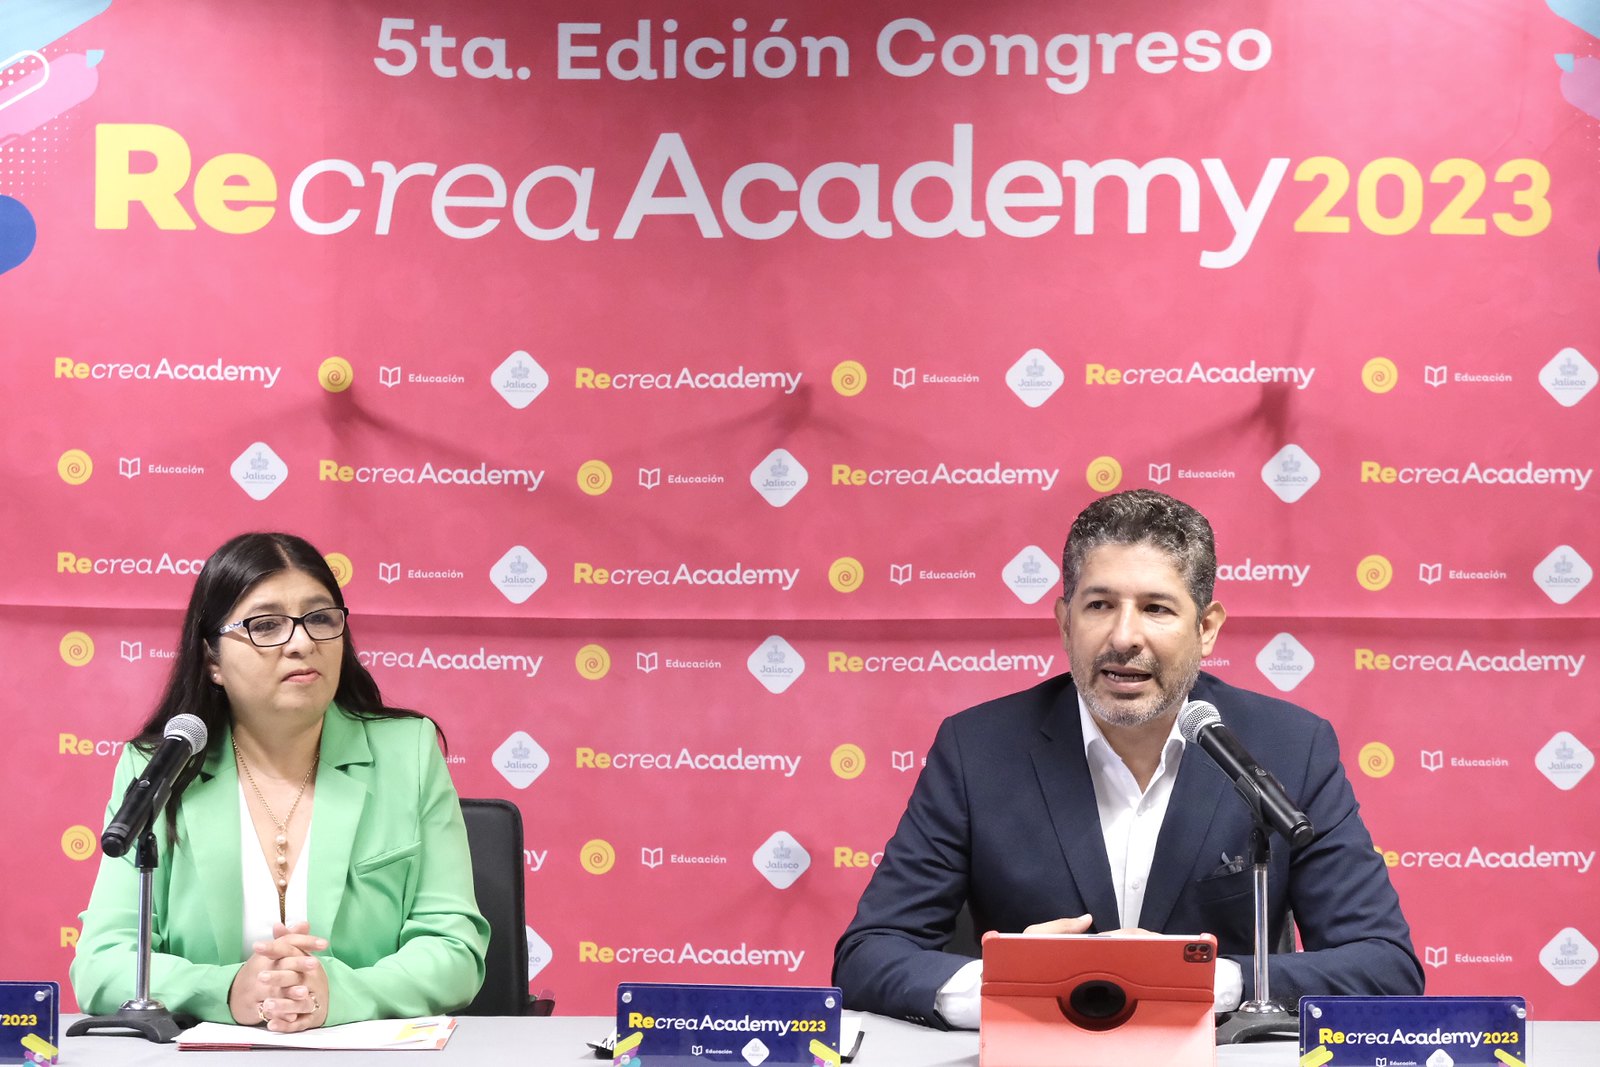 SE da a conocer los detalles del congreso Recrea Academy 2023